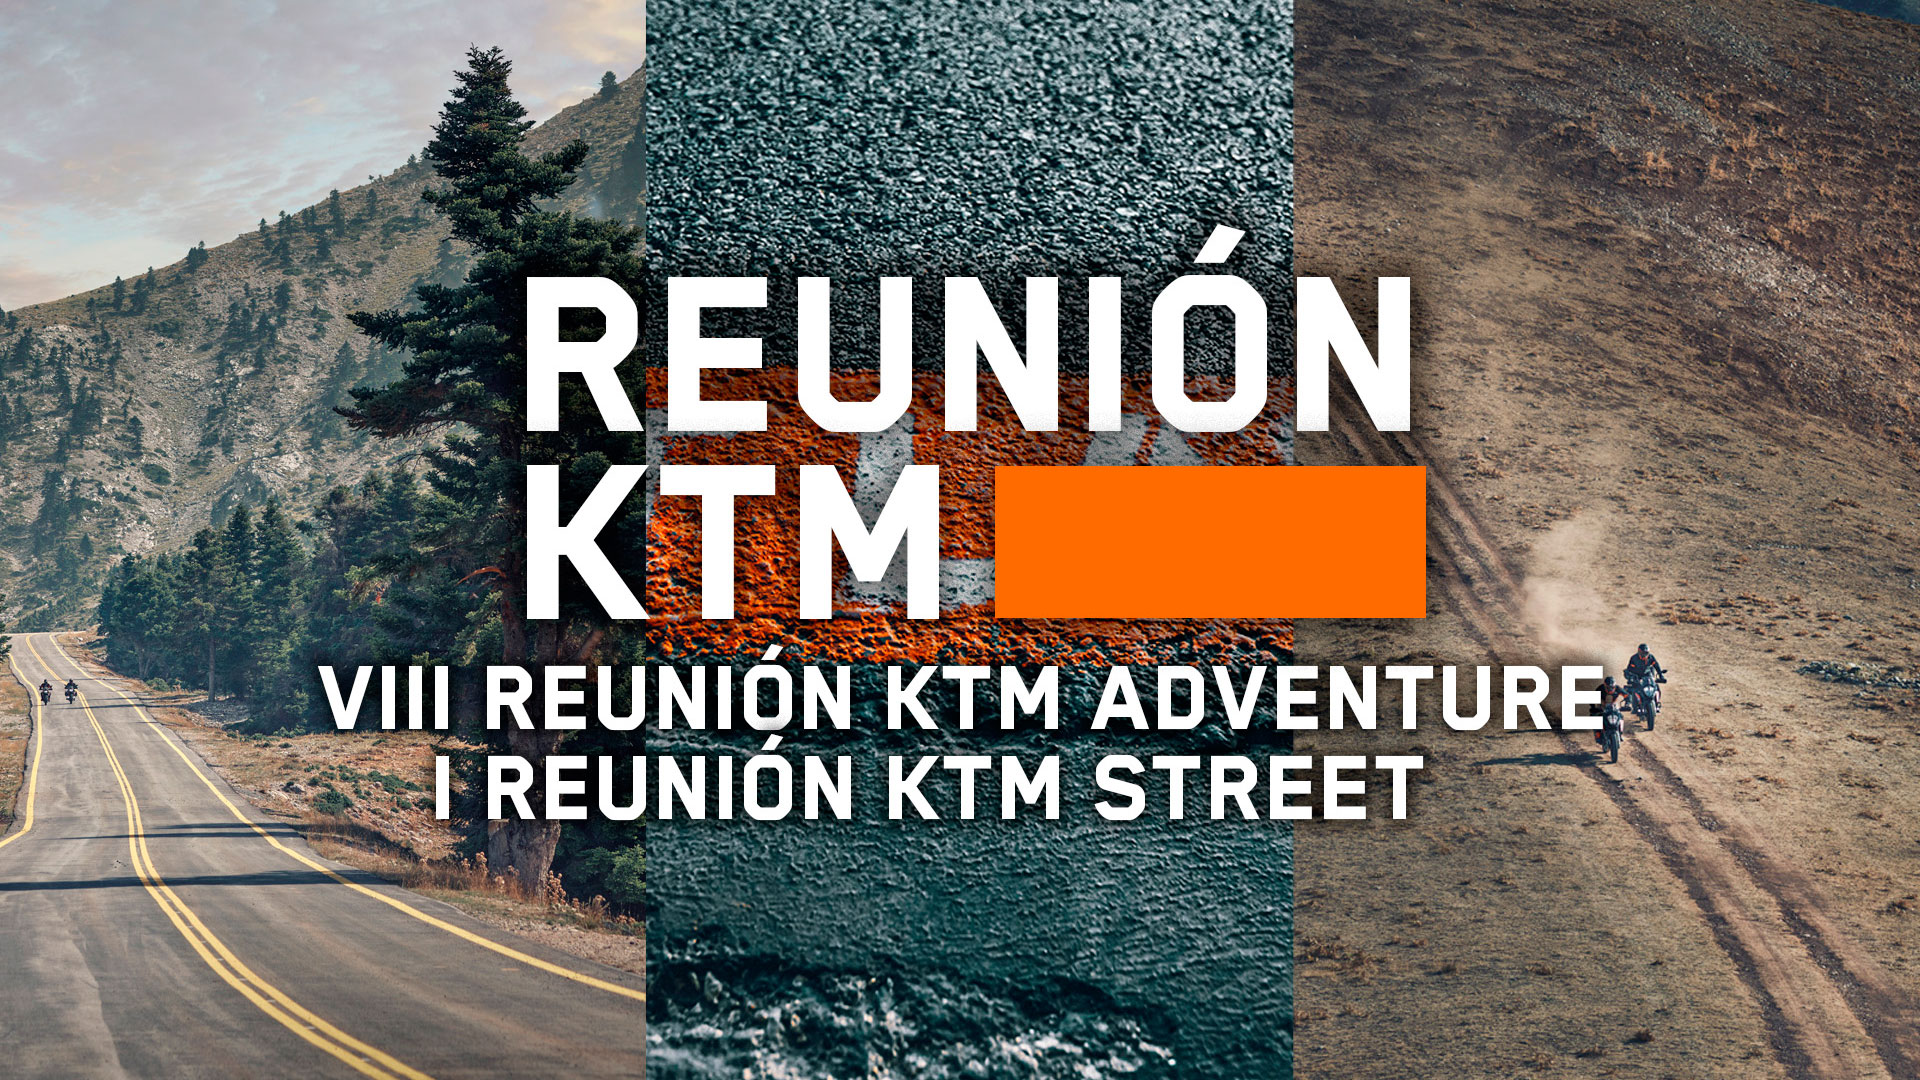 La esperada Reunión KTM regresa con la posibilidad de probar su gama de carretera